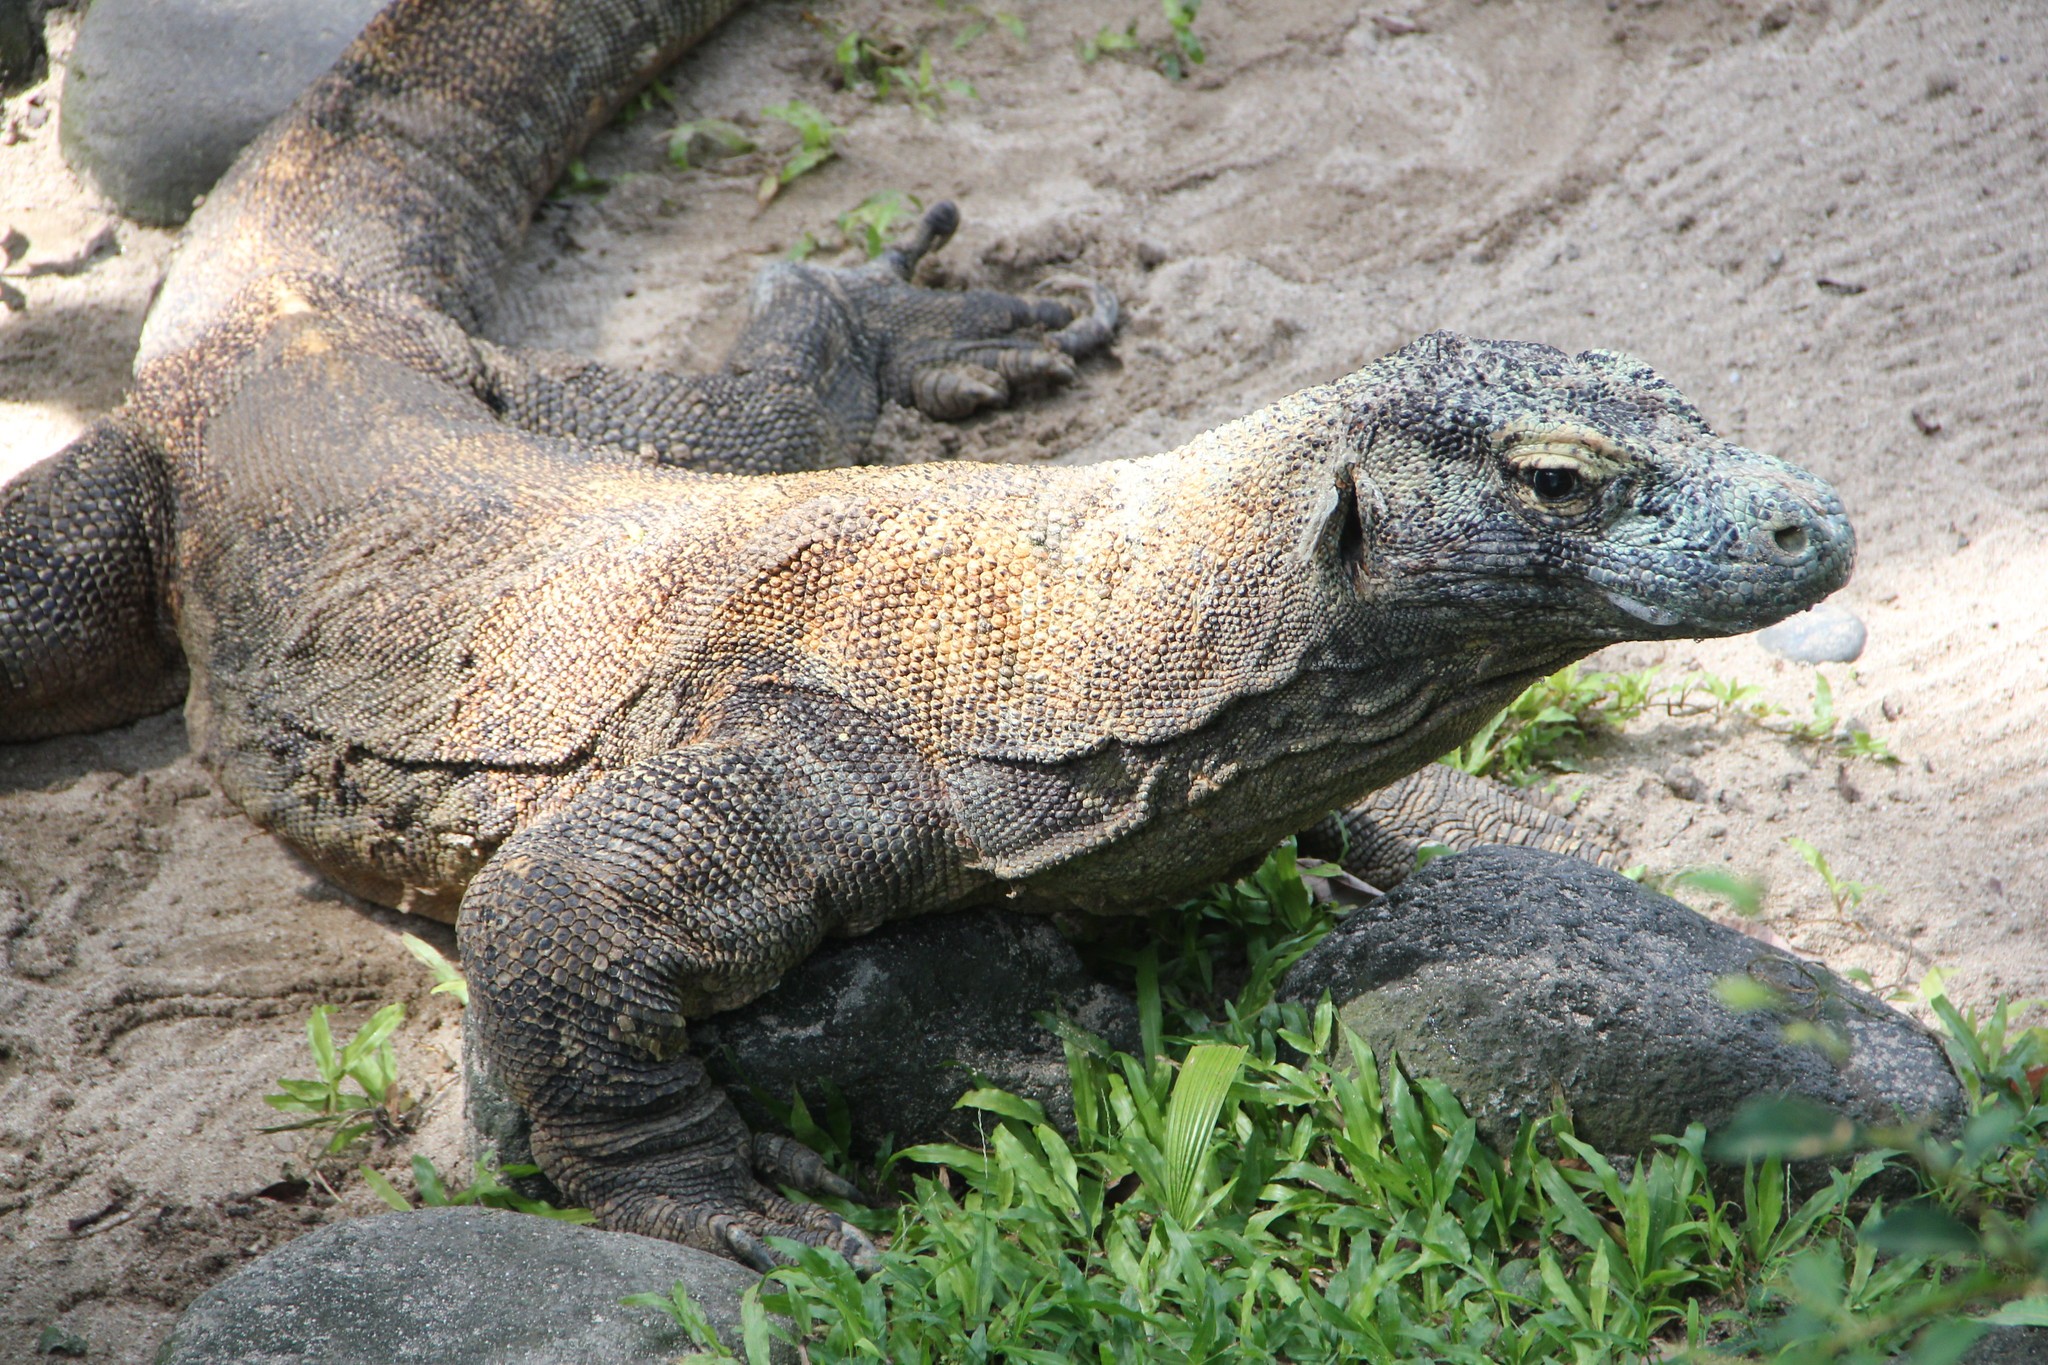 Pesquisa mostra que dragão-de-komodo tem armadura de ossos minúsculos sob a pele (Foto: Flickr/Kahunapule Michael Johnson/Creative Commons)